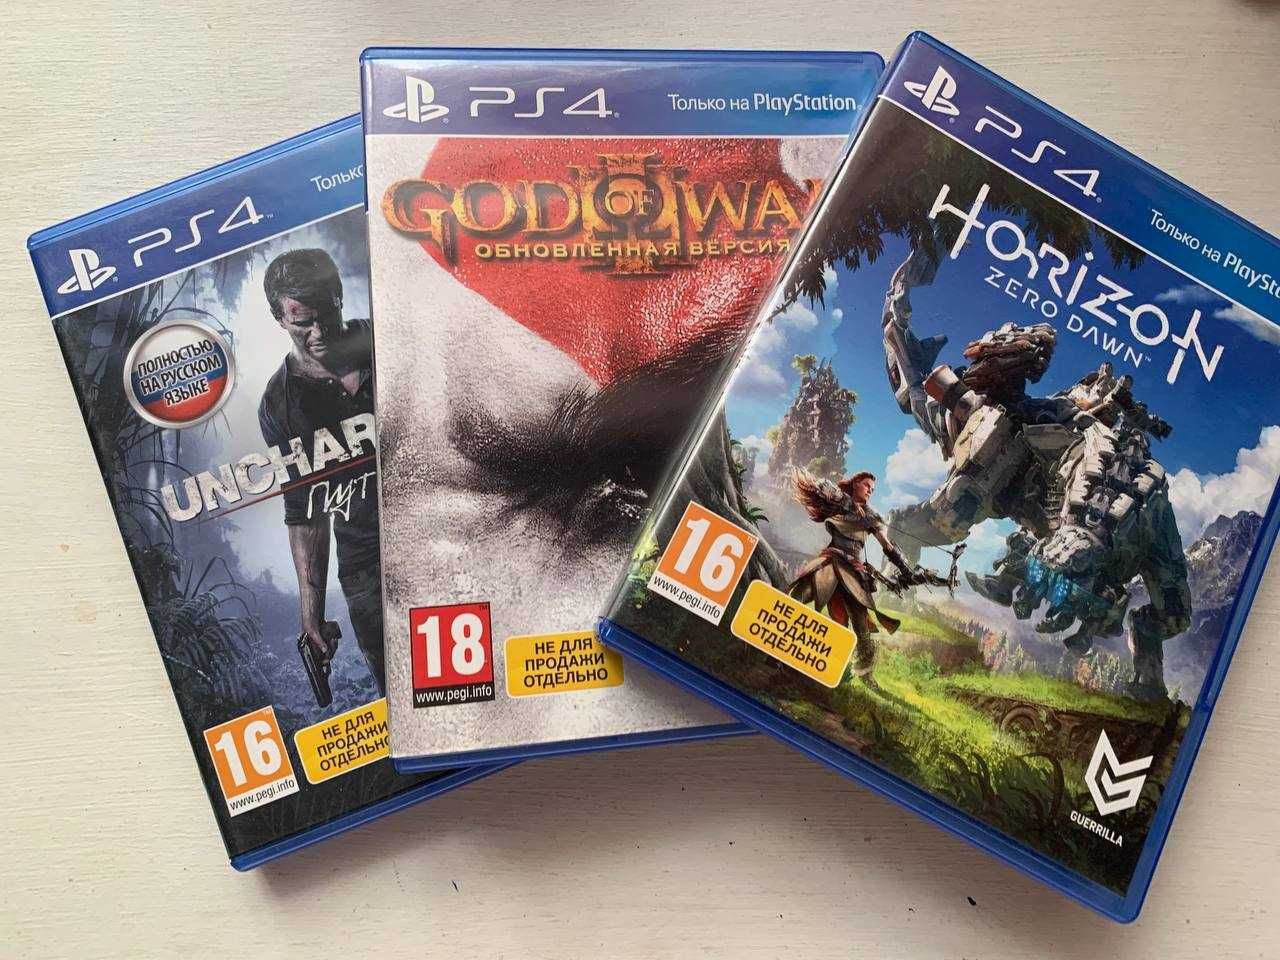 Horizon: Zero Dawn (російська версія). Гра для PlayStation 4.